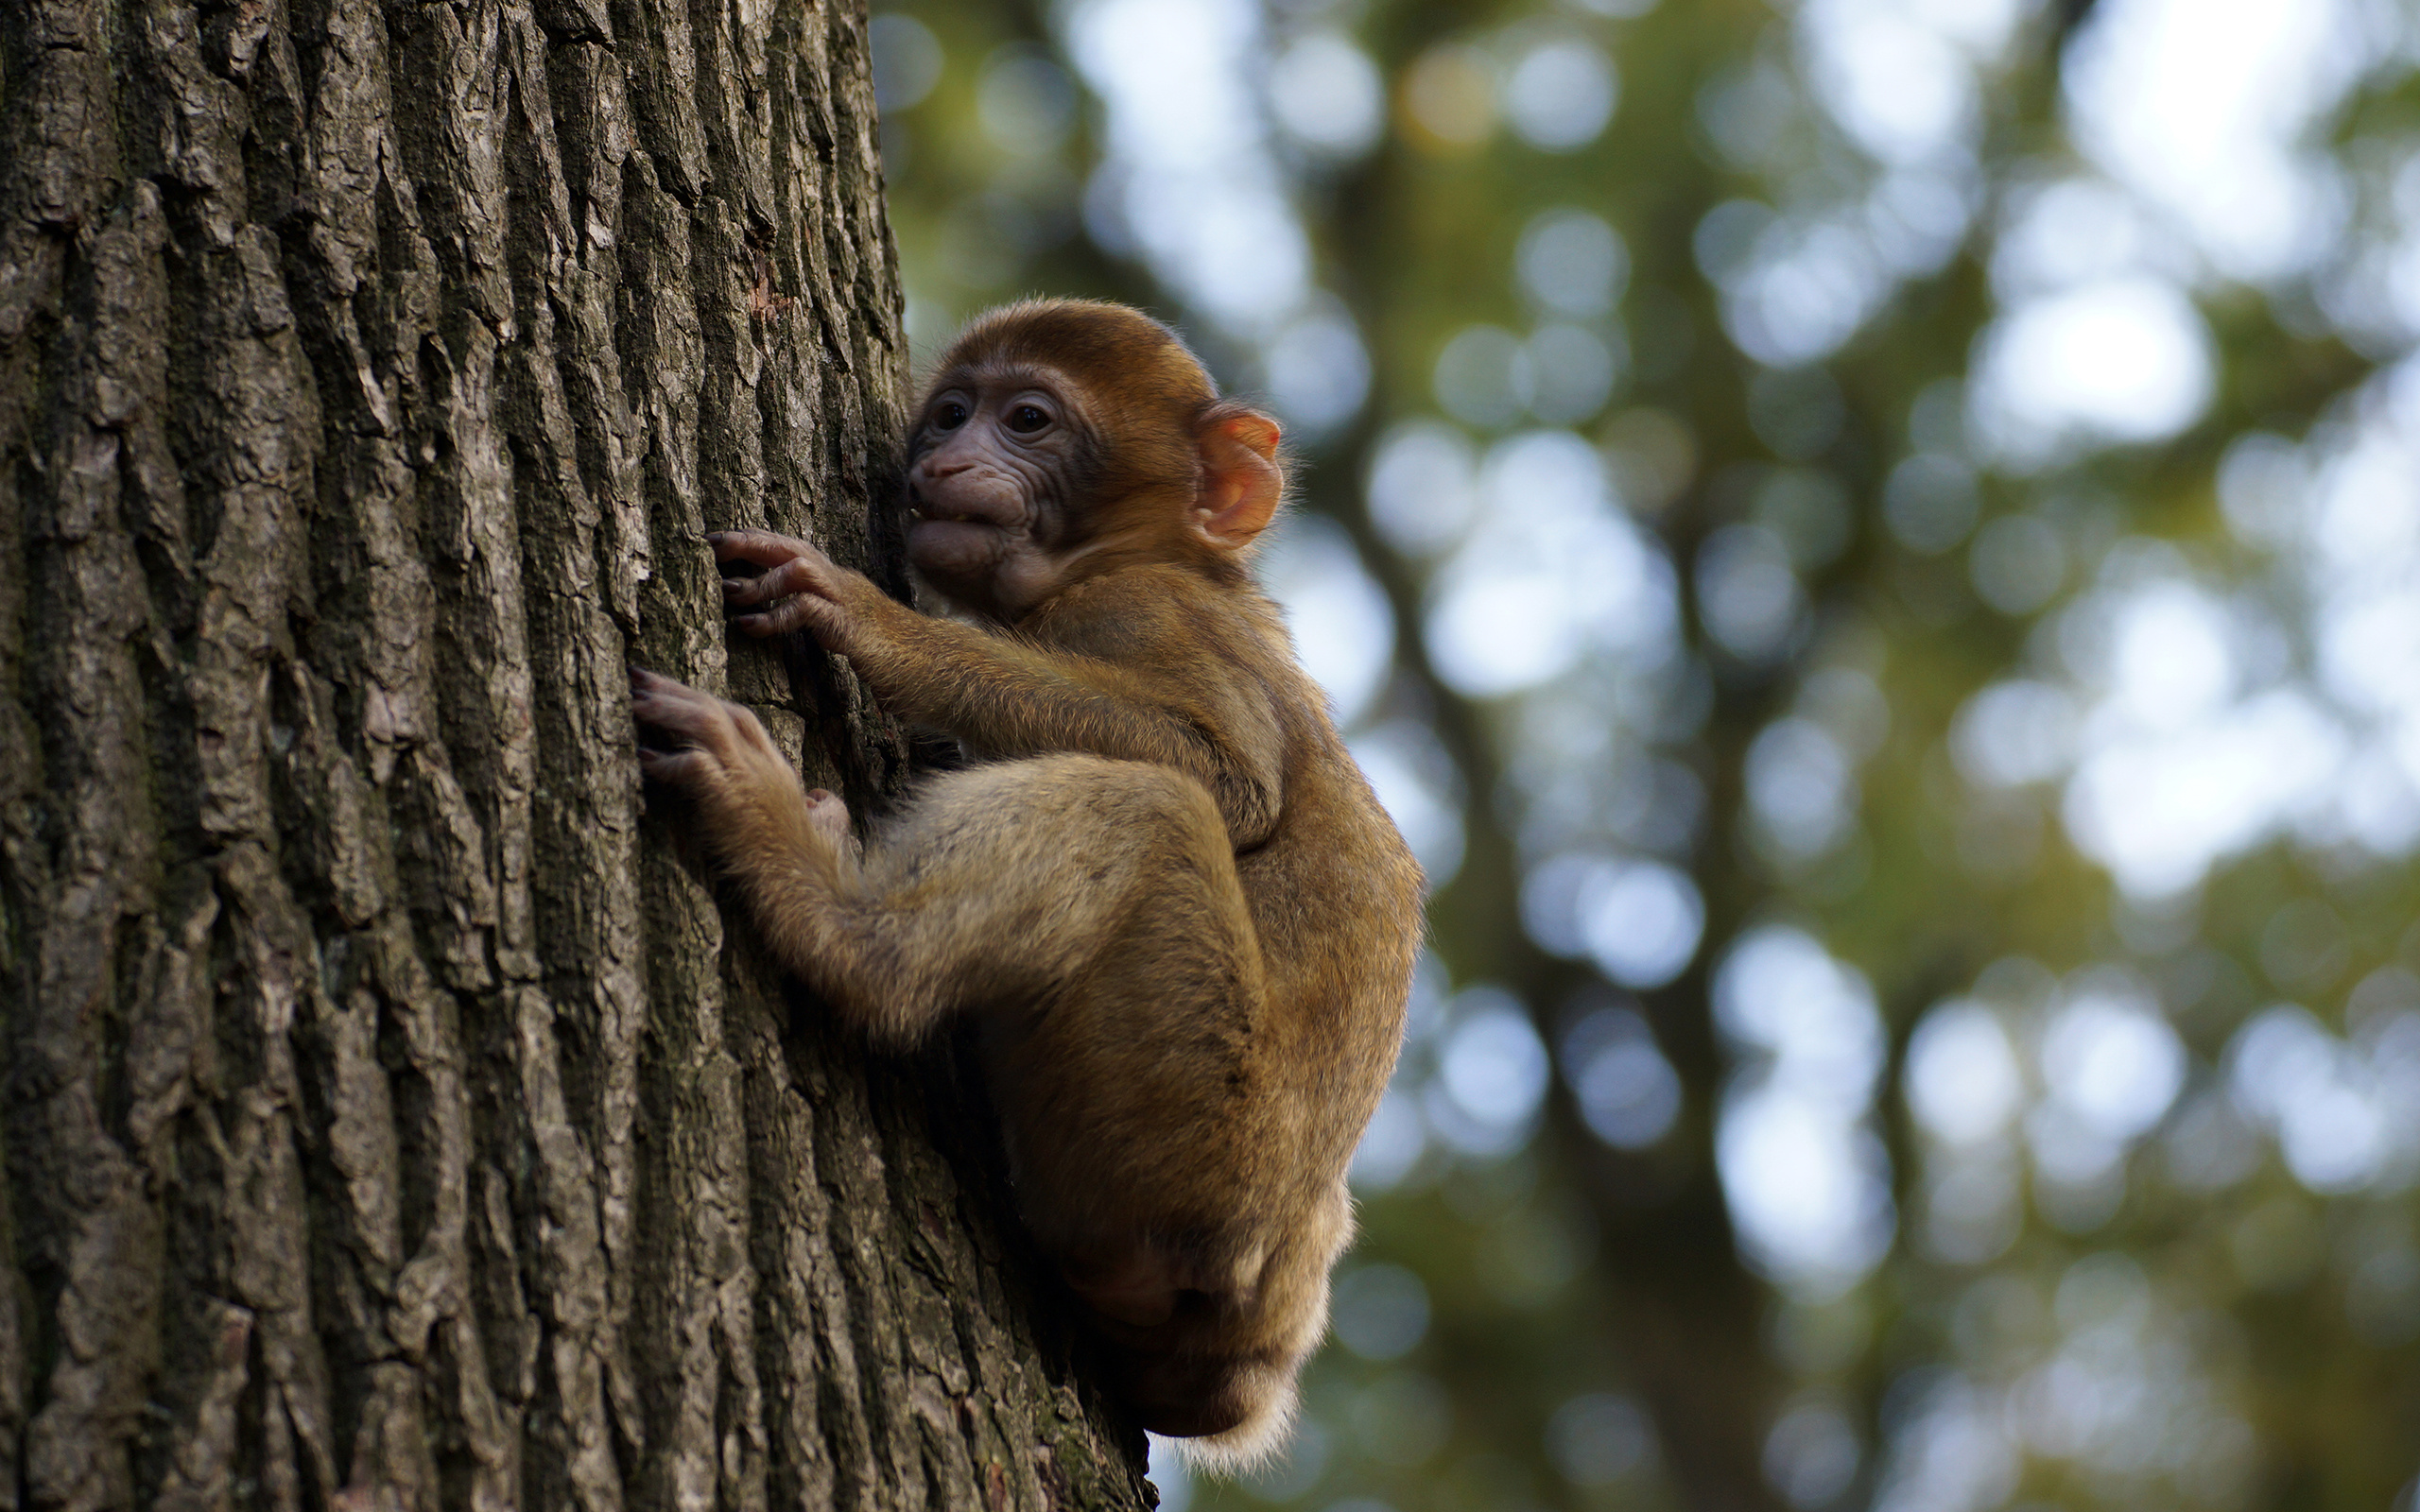 Tree monkey baby, HD desktop backgrounds, Monkey wallpapers, 2560x1600 HD Desktop